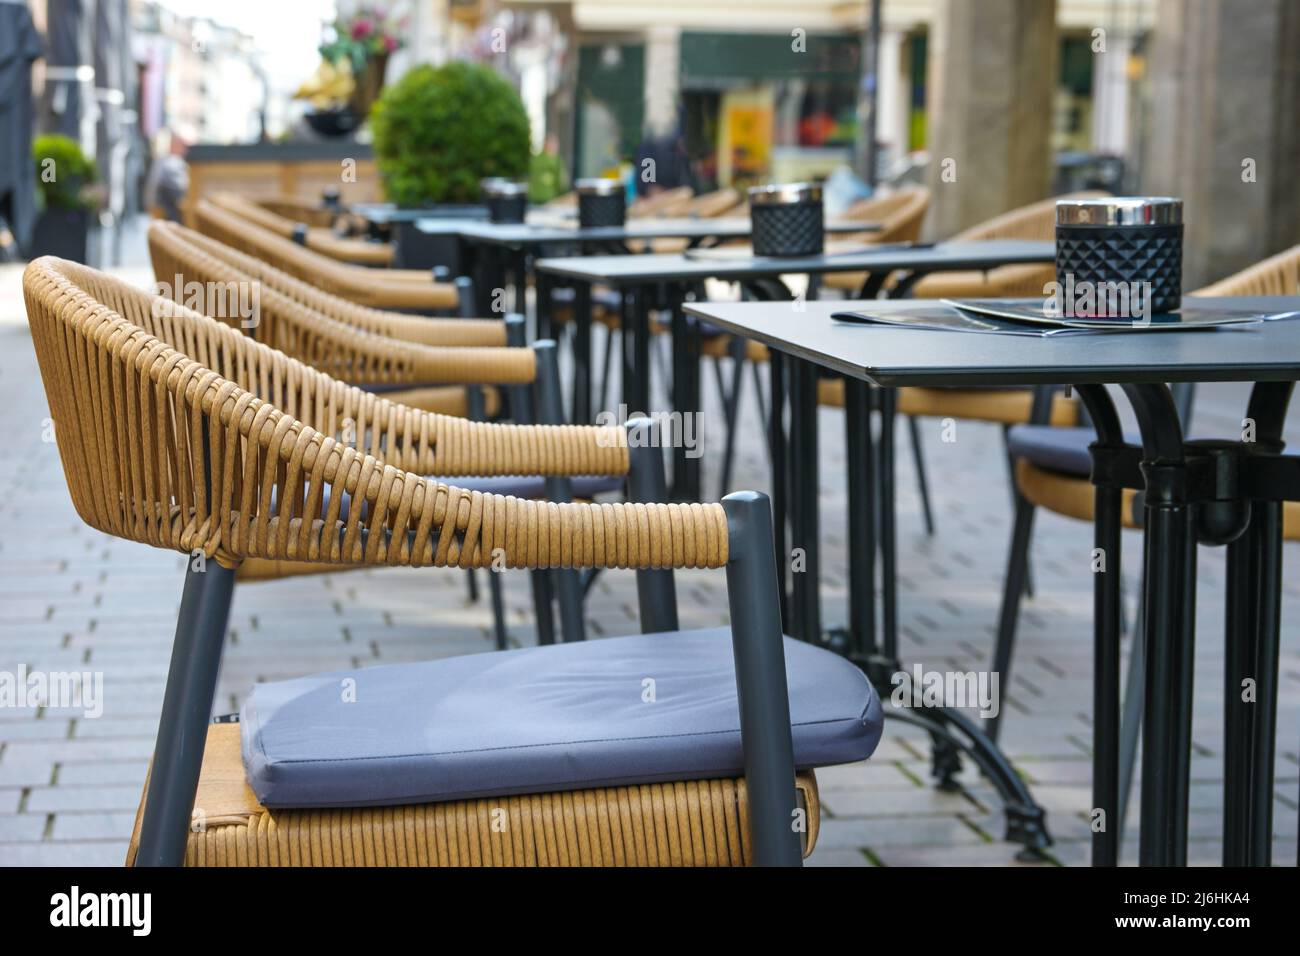 Chaises et tables vides dans un café de rue de la ville, gastronomie urbaine en plein air, concentration sélectionnée, profondeur de champ étroite Banque D'Images